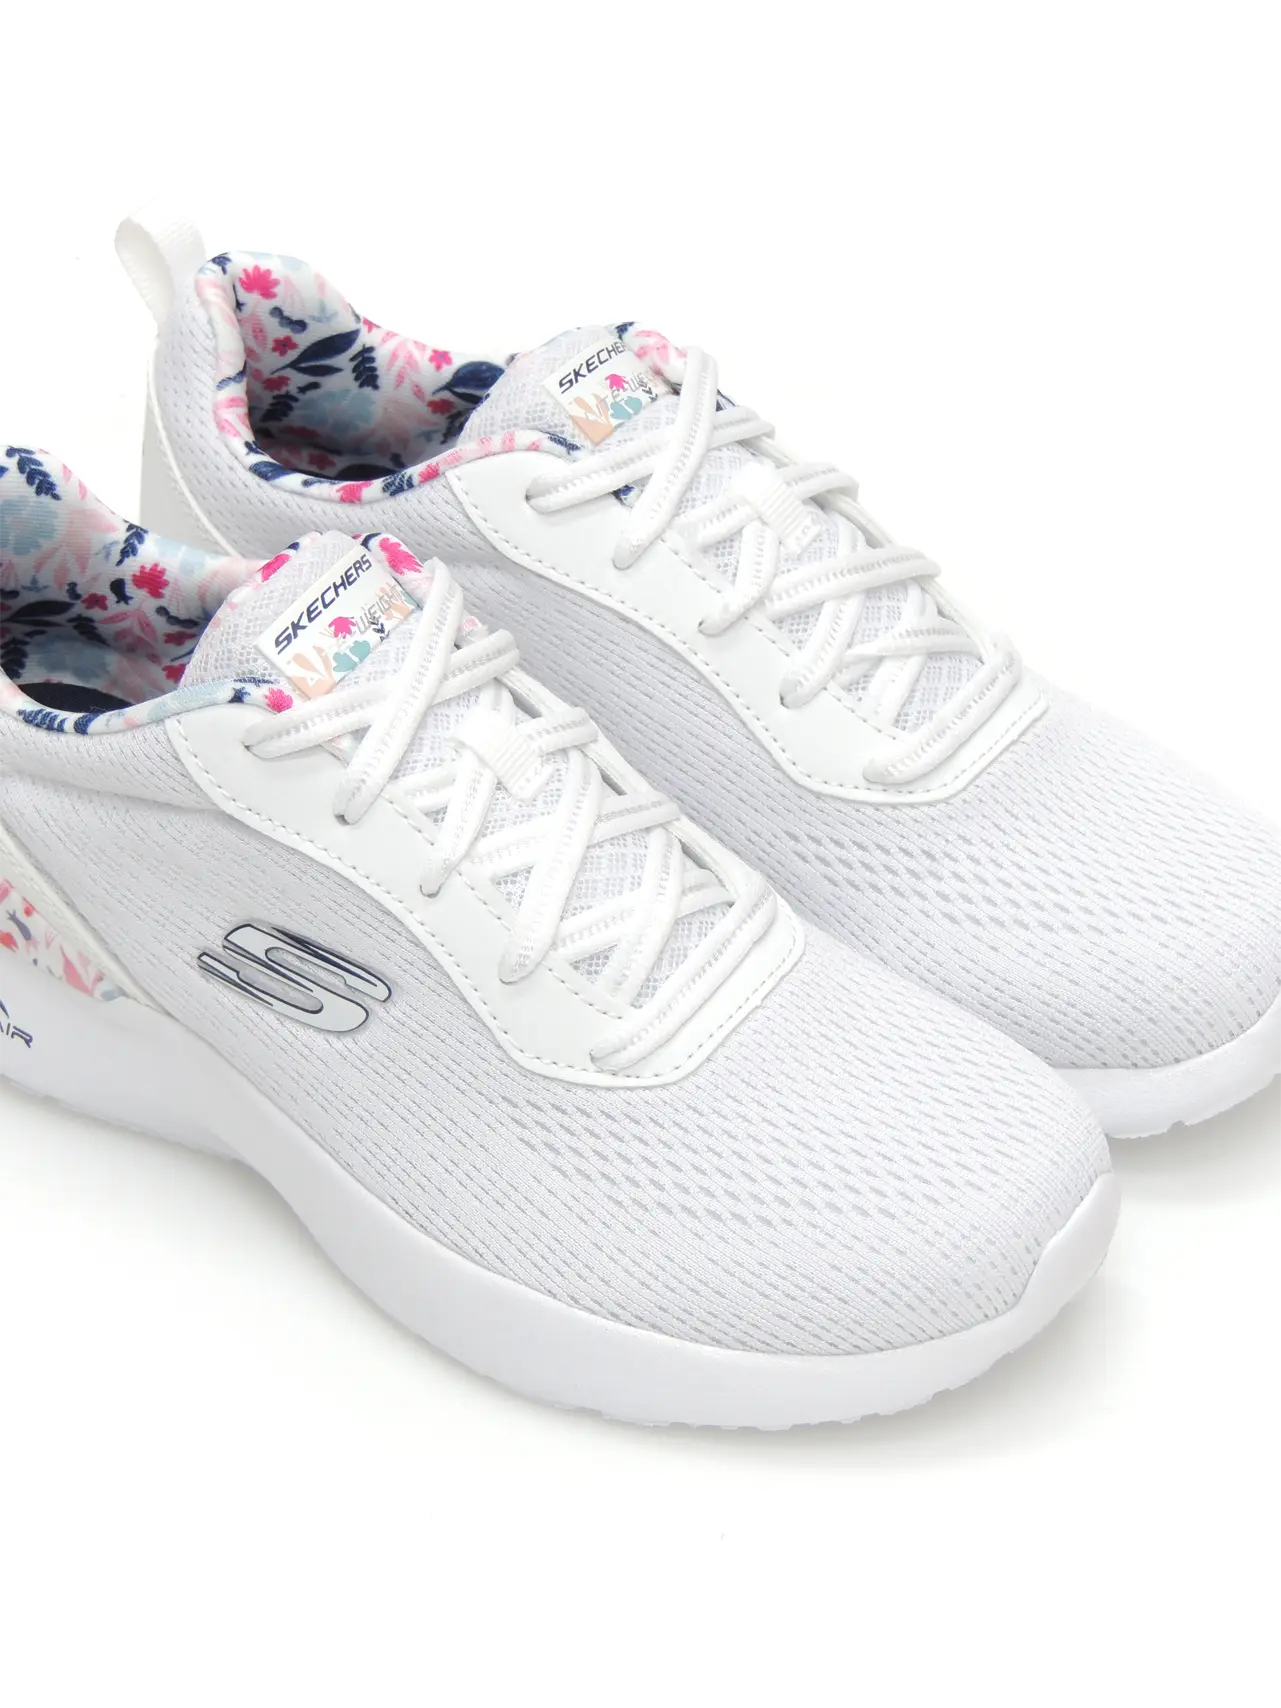 sneakers--skechers-149756-textil-blanco